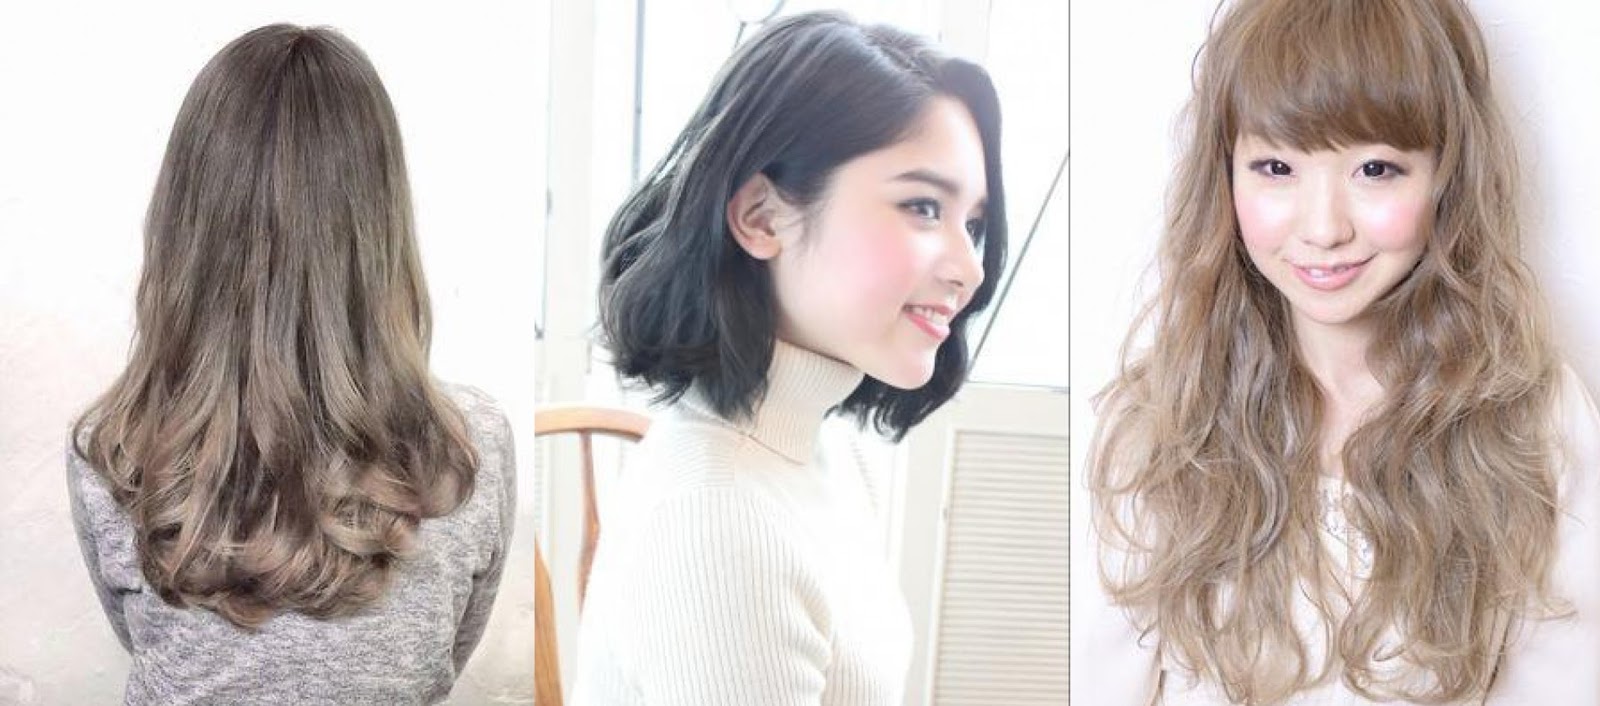 Warna Rambut Ash Warna Rambut Yang Cocok Untuk Orang Asia Model